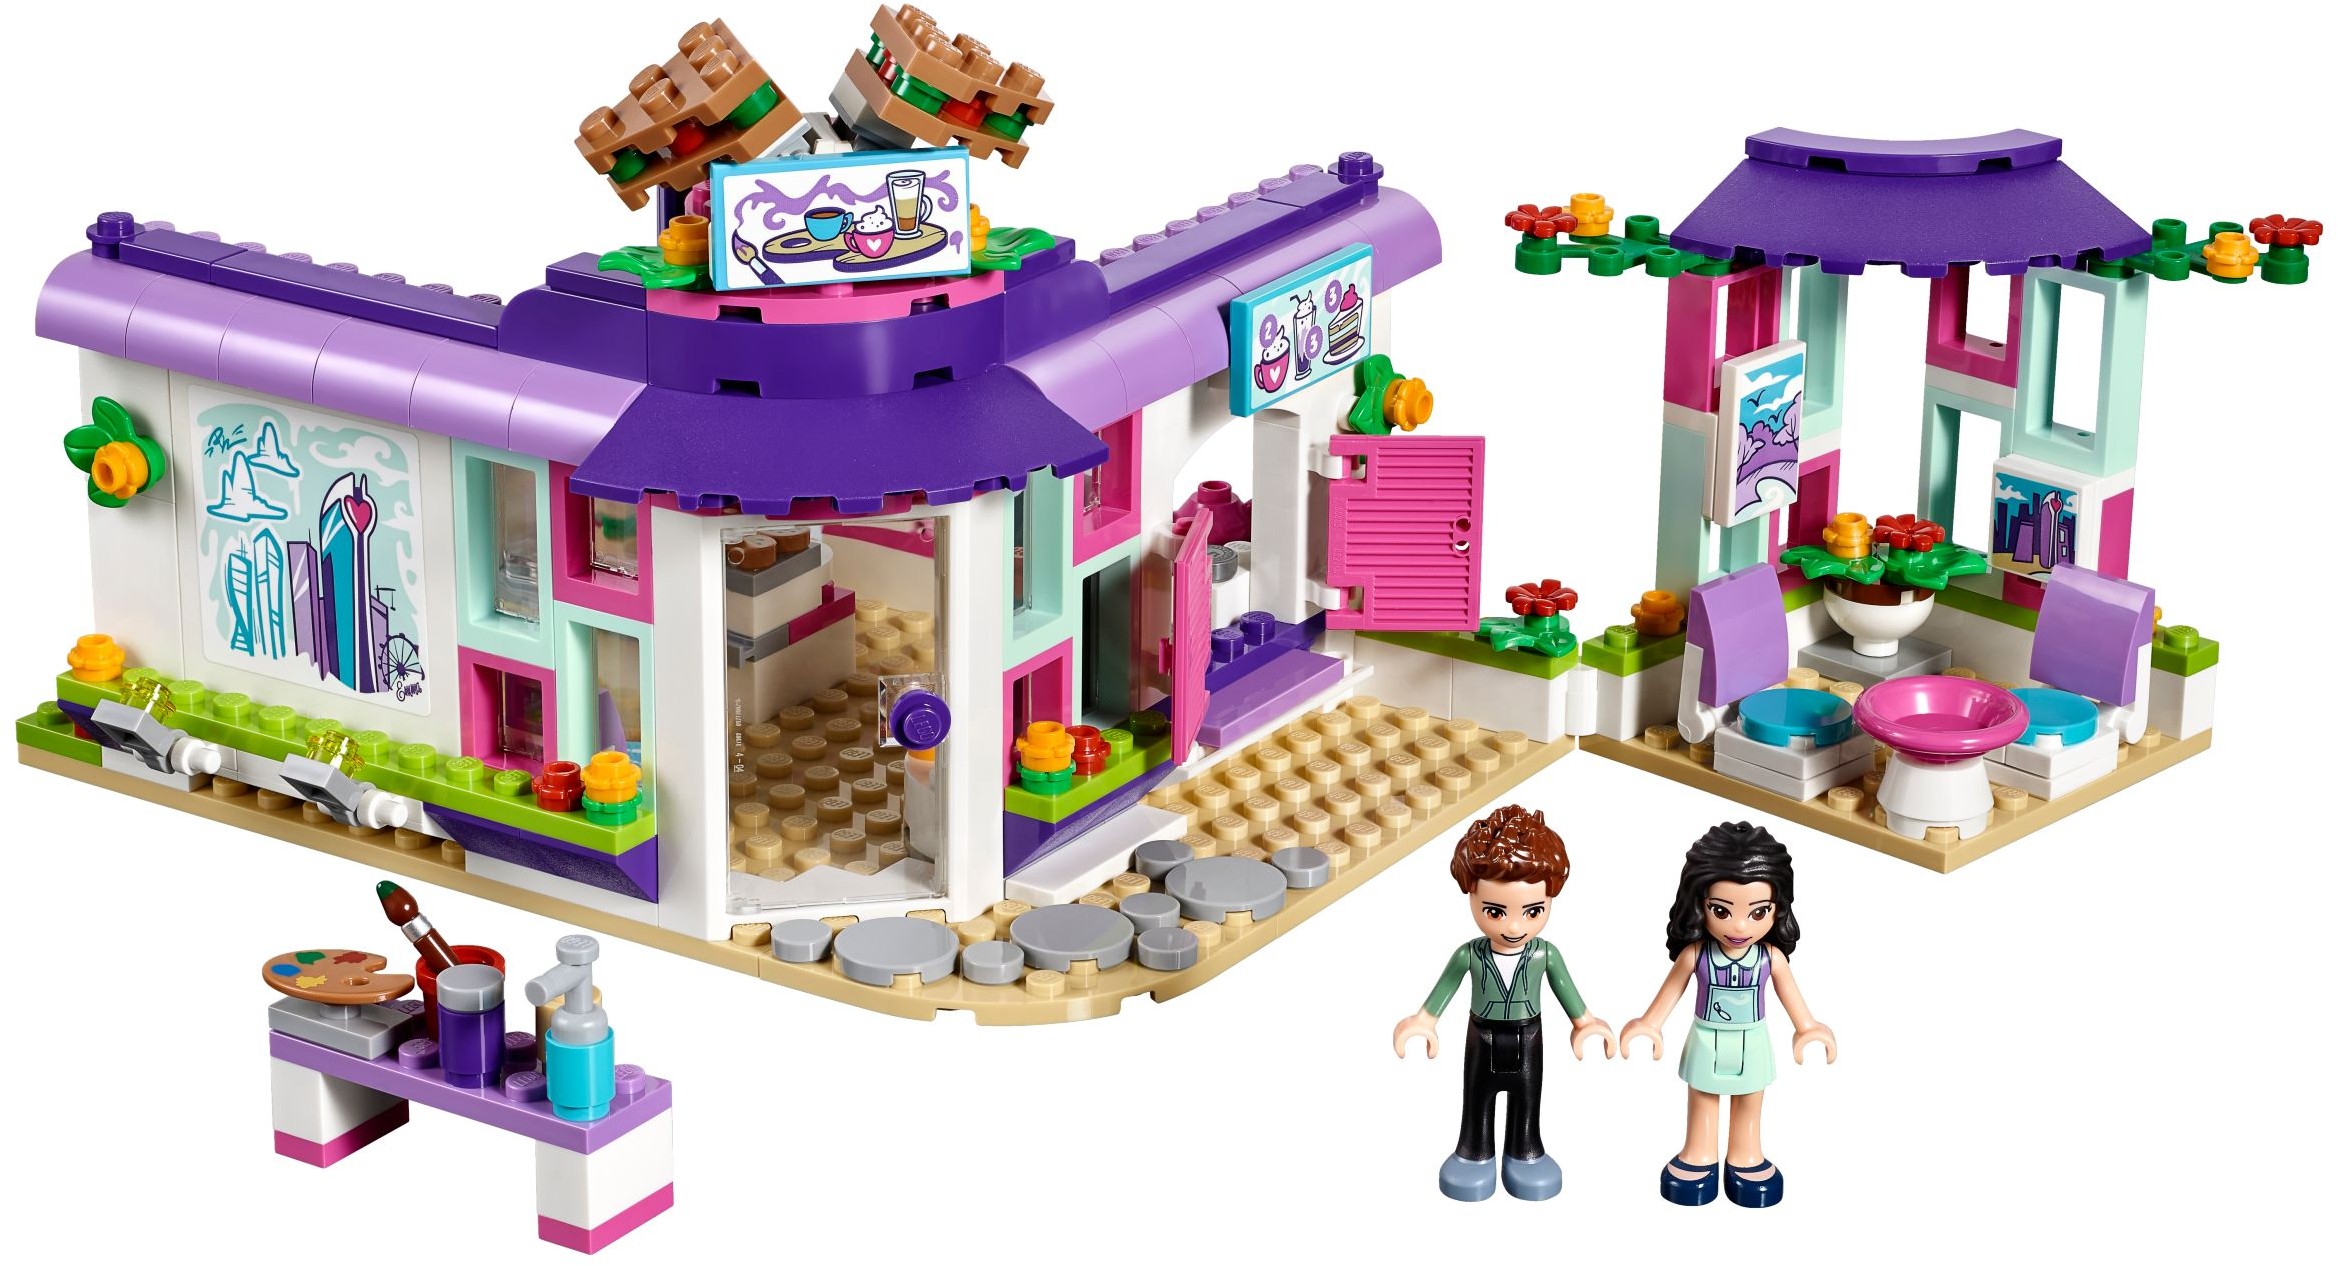 Friends | 2018 Brickset: LEGO set and database